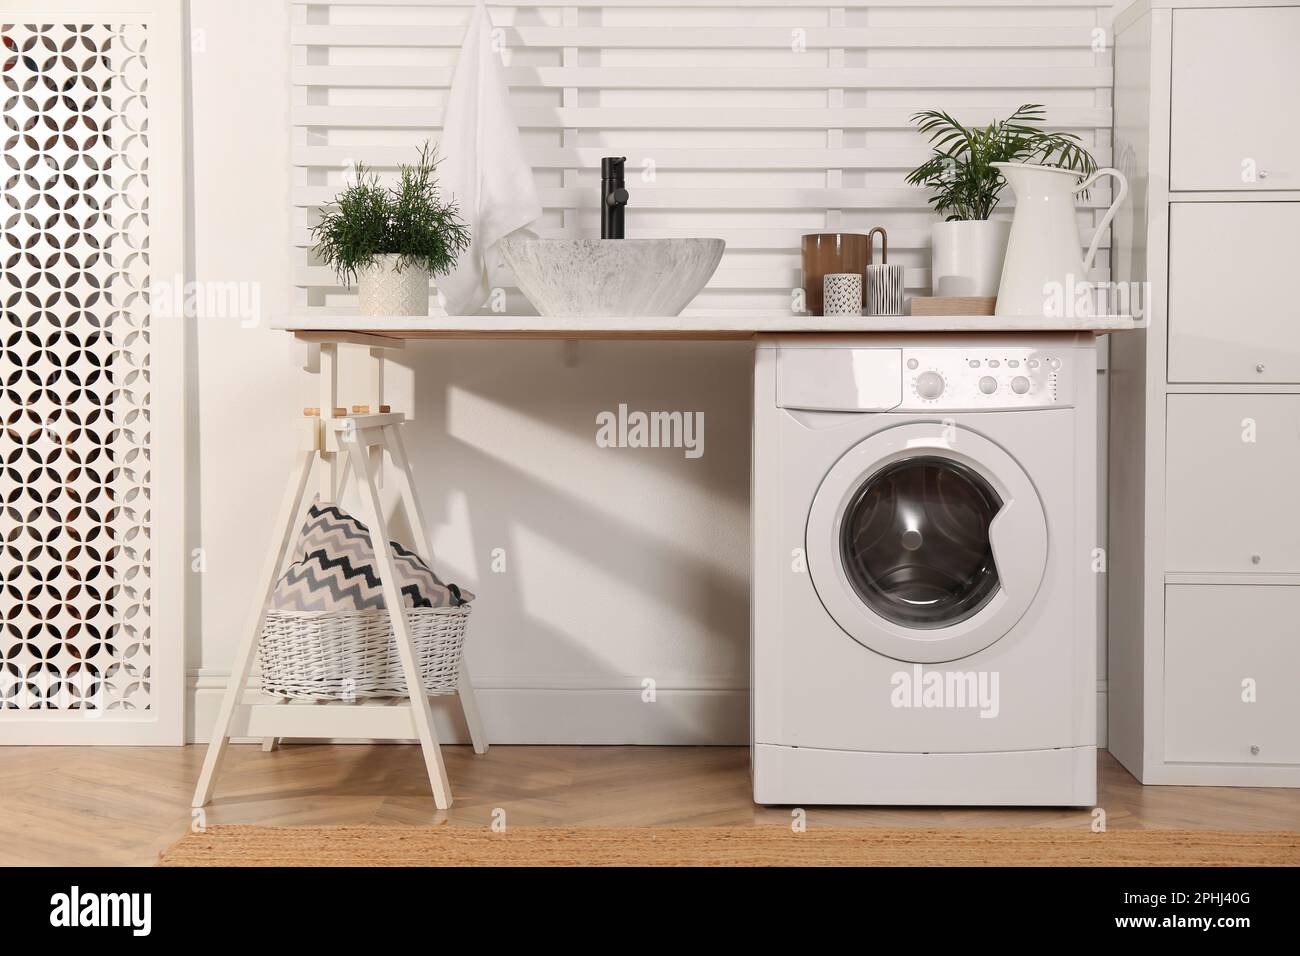 Waschraum mit moderner Waschmaschine und Regal in der Nähe der weißen Wand  Stockfotografie - Alamy